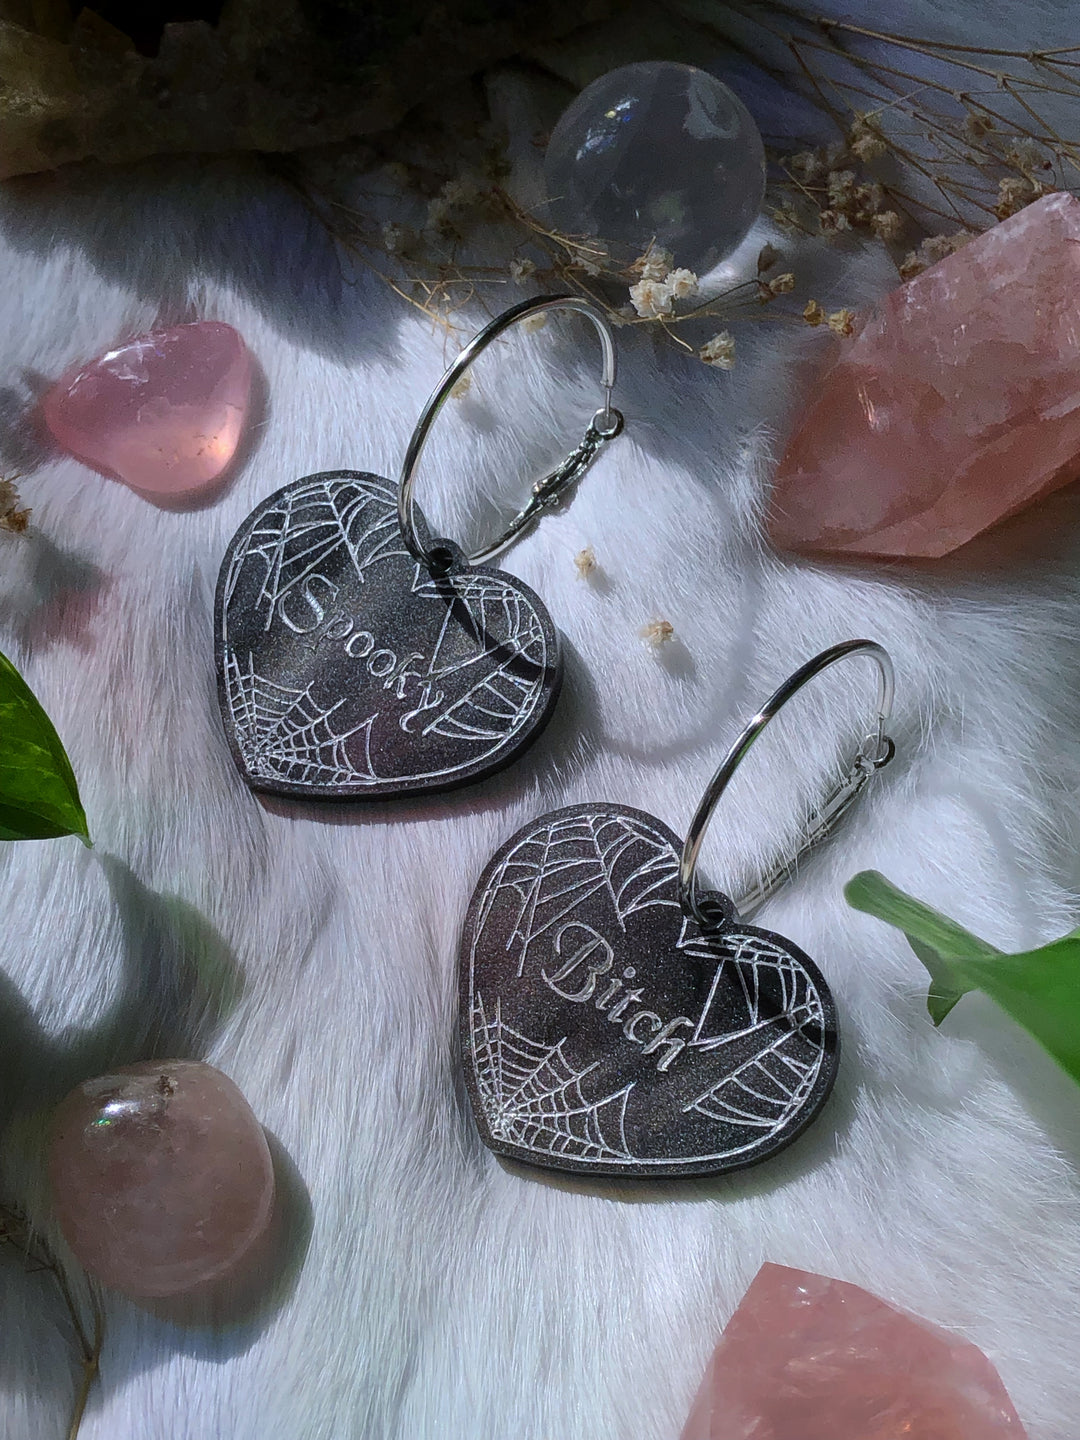 "Spooky Bitch" Heart Hoop Earrings